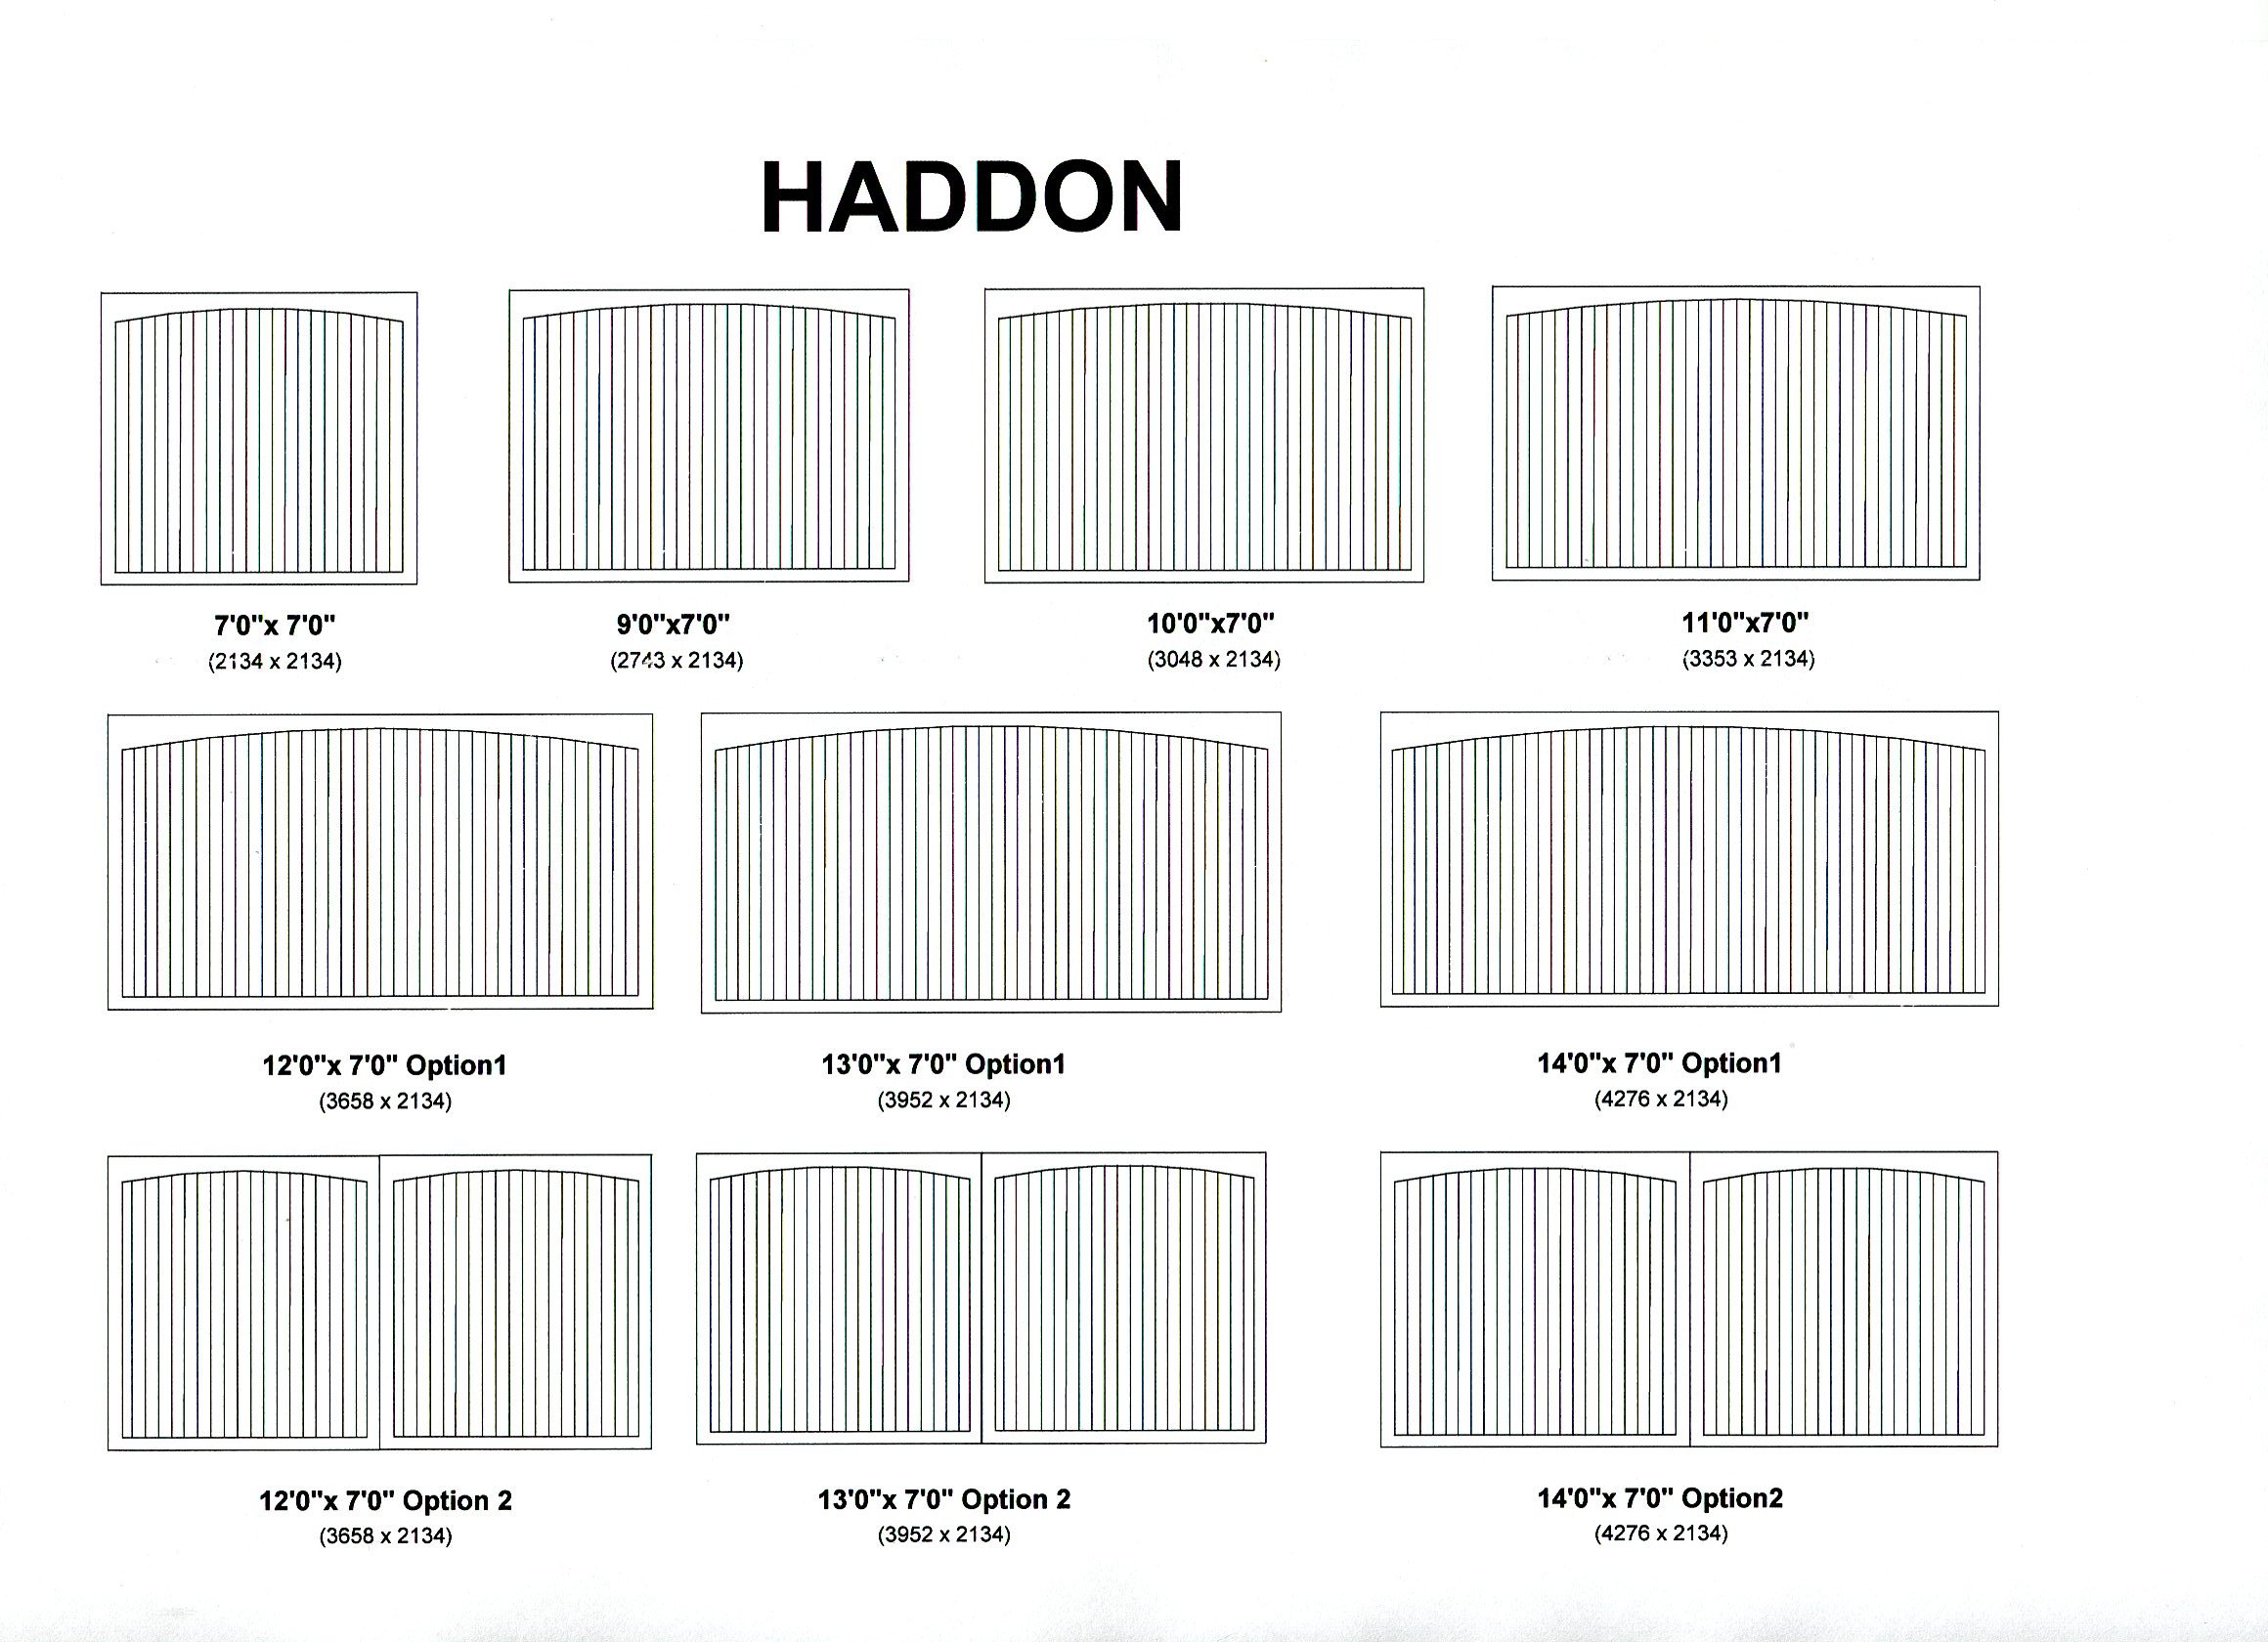 Cedar Door Haddon design options